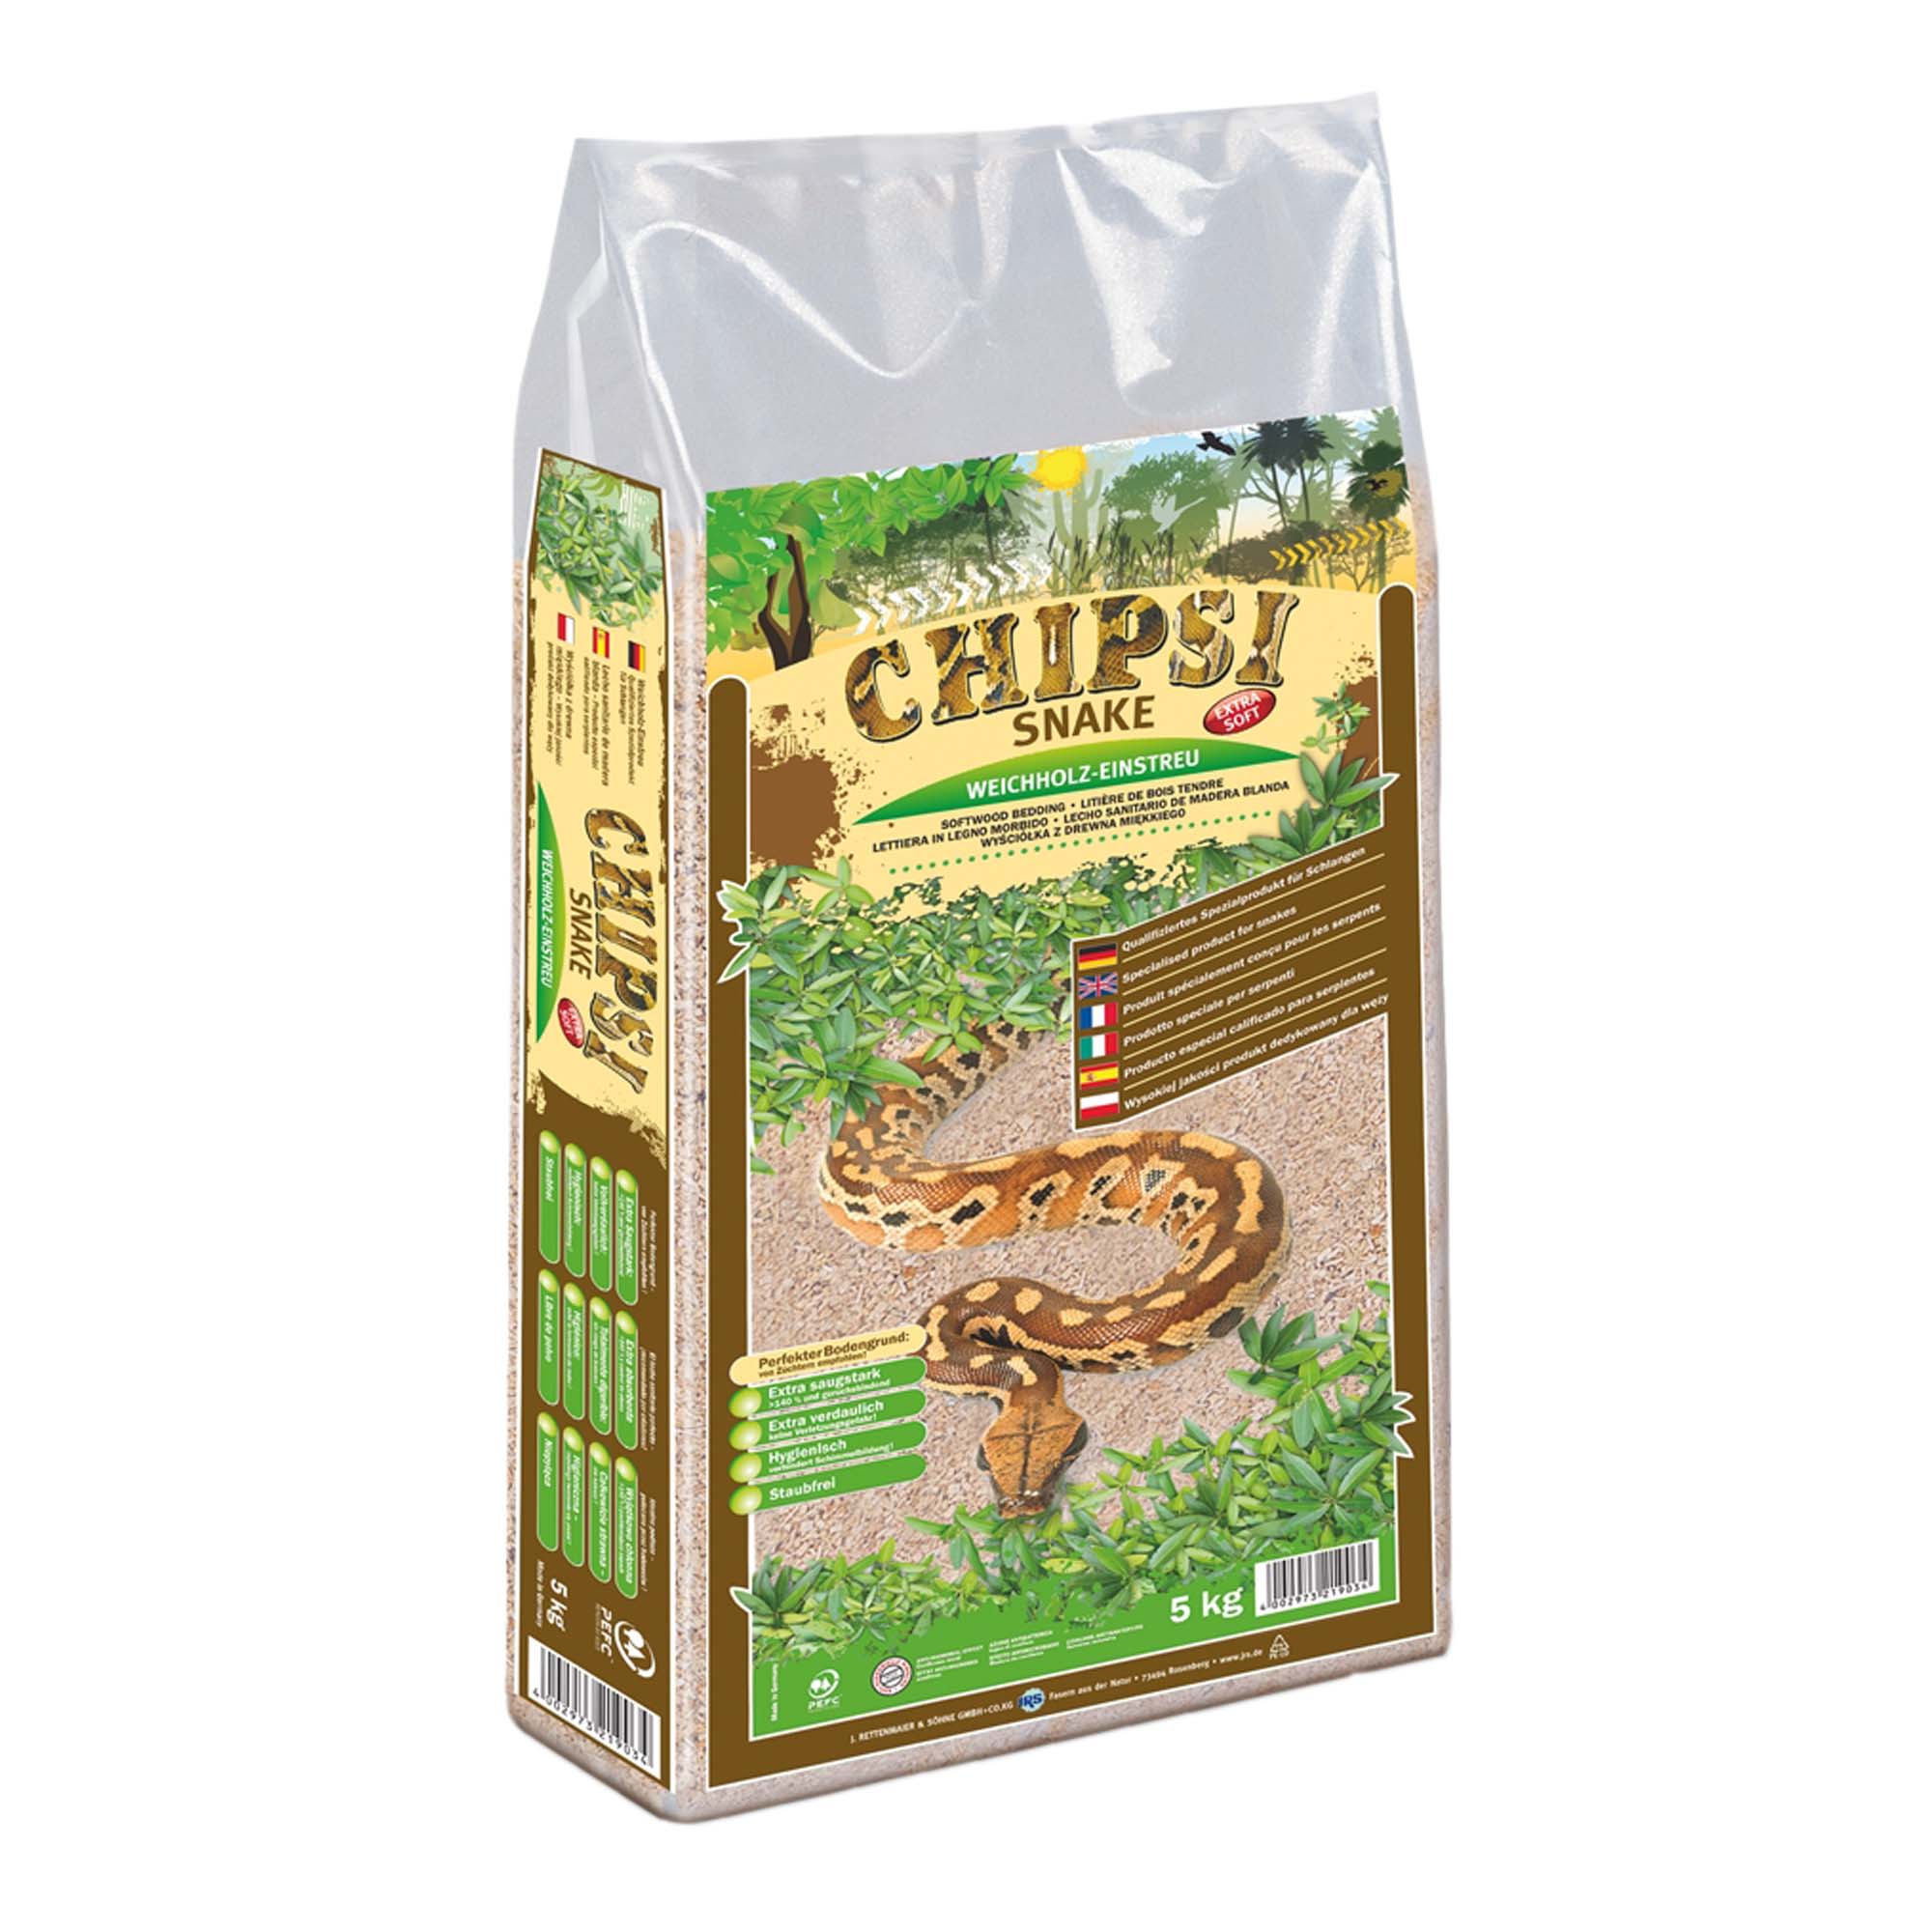 Chipsi snake bedding 5kg